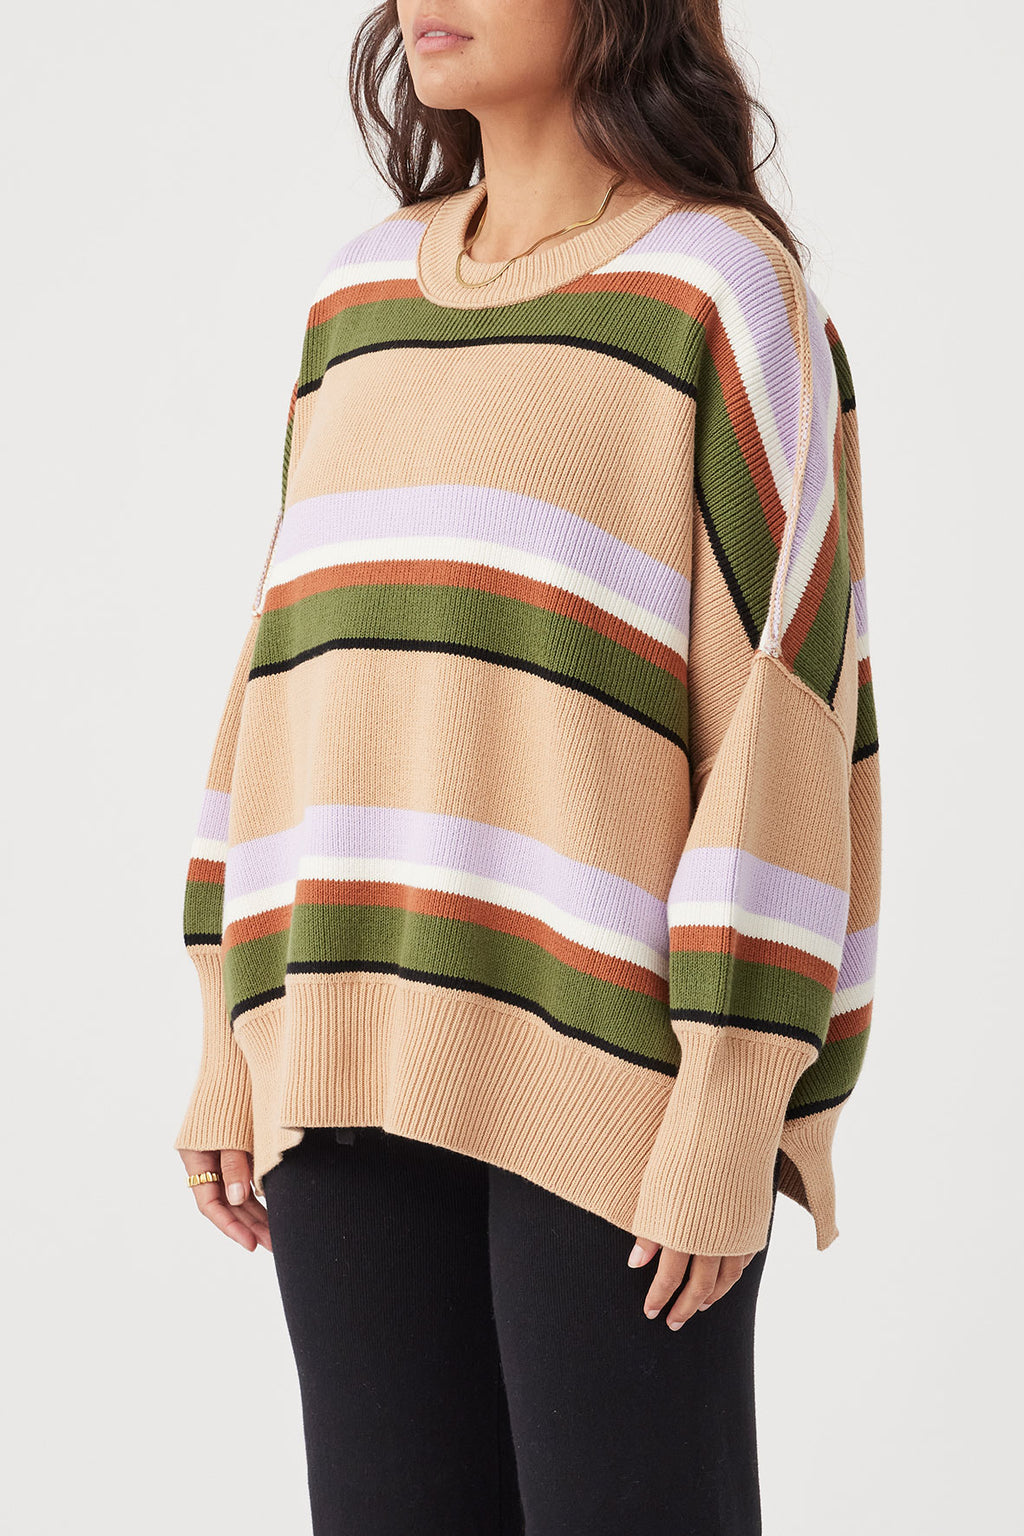 Harper Stripe Sweater - Honey, Lilac & Cream